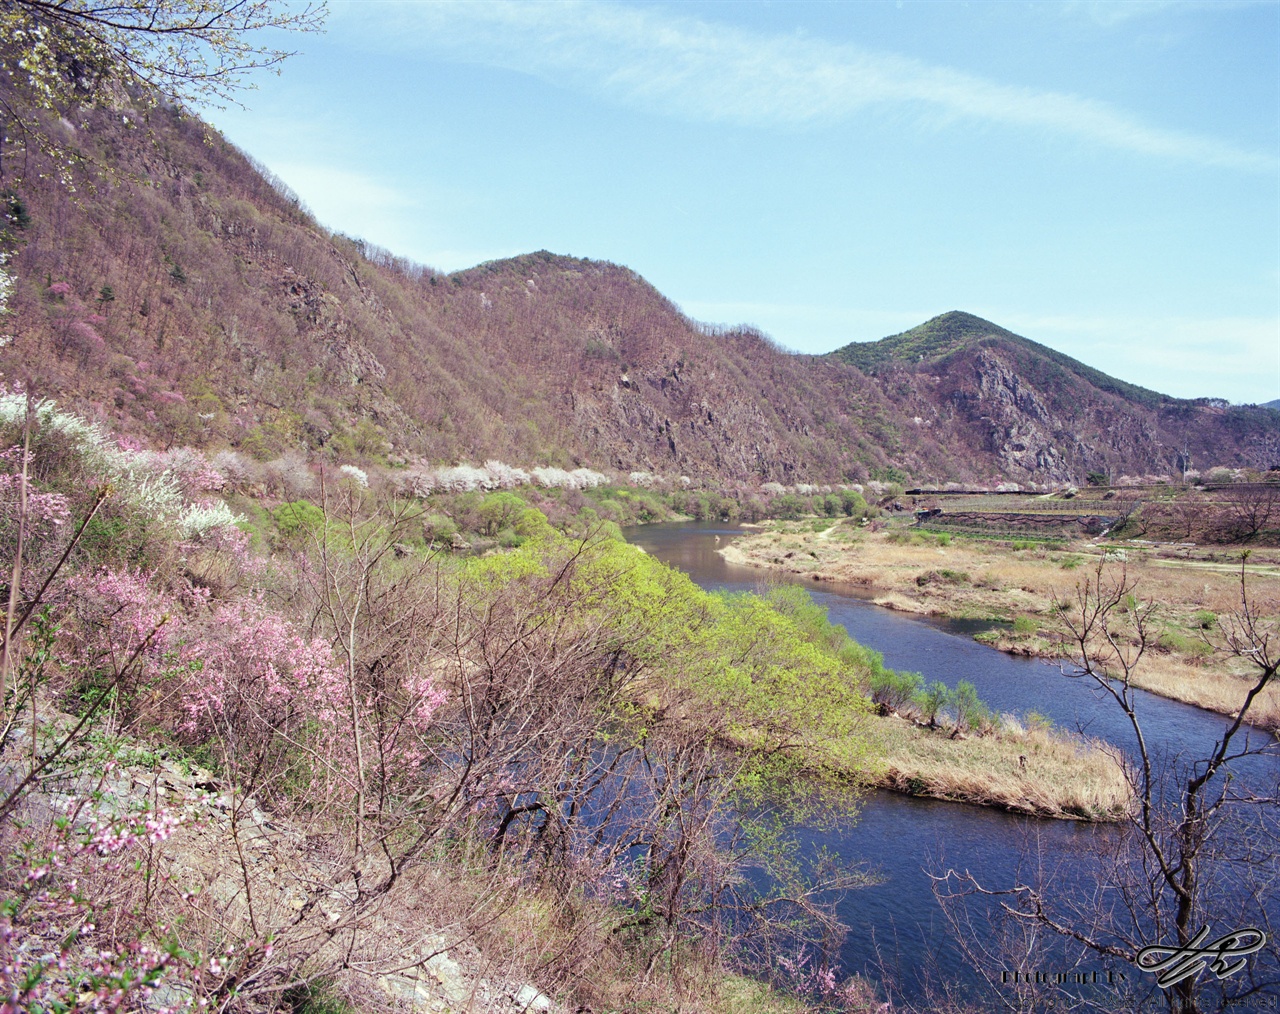 (67ii/Extar100)금강 벼룻길 중 일부의 모습. 벚나무와 산벚나무, 연두색으로 올라오는 2017년의 새 이파리가 함께 어우러져 색색의 봄을 연출하고 있다.